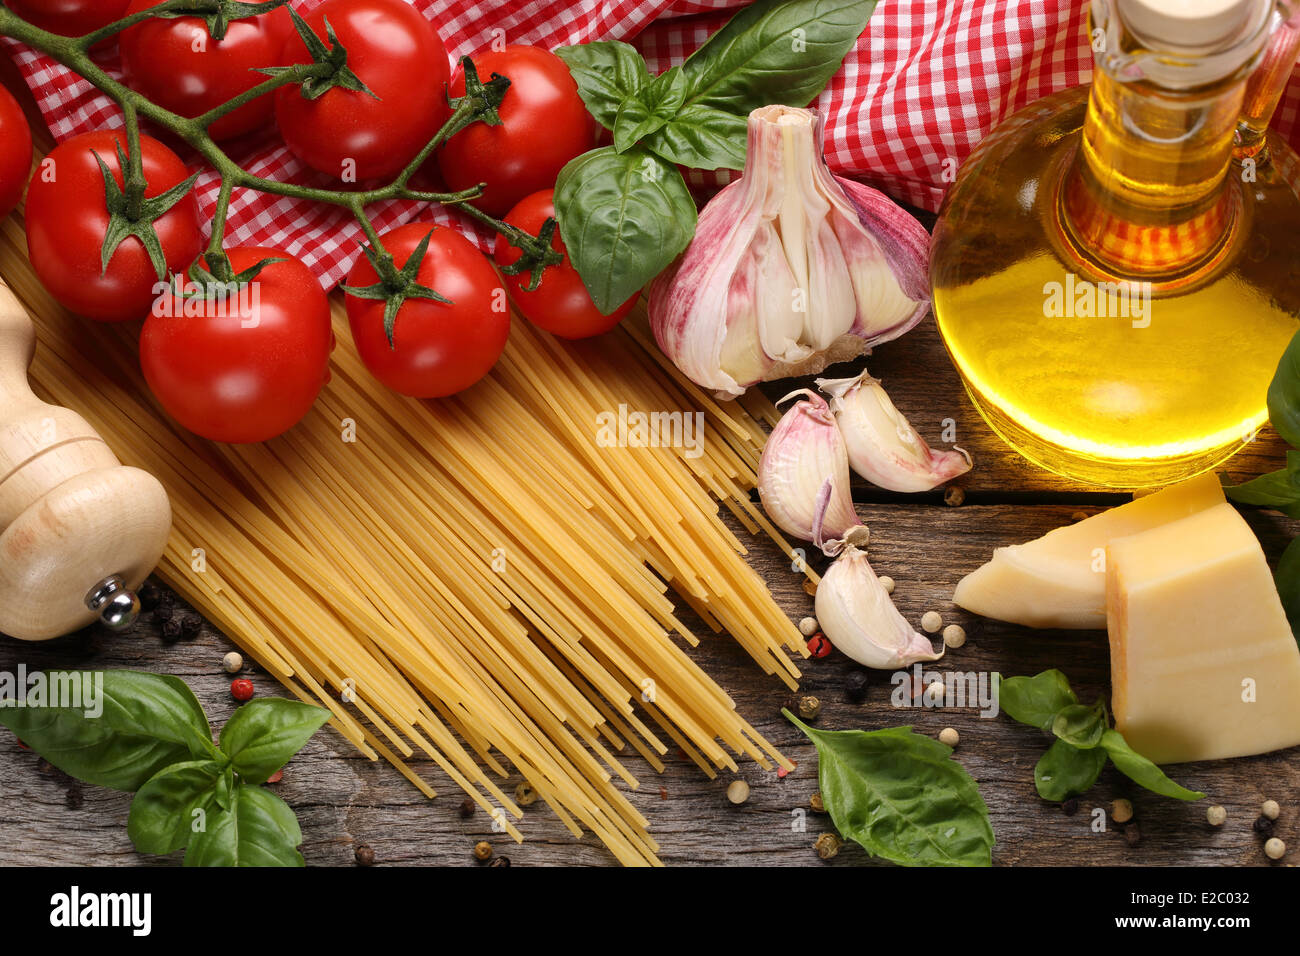 Ingrédients alimentaires italiennes sur fond de bois Banque D'Images